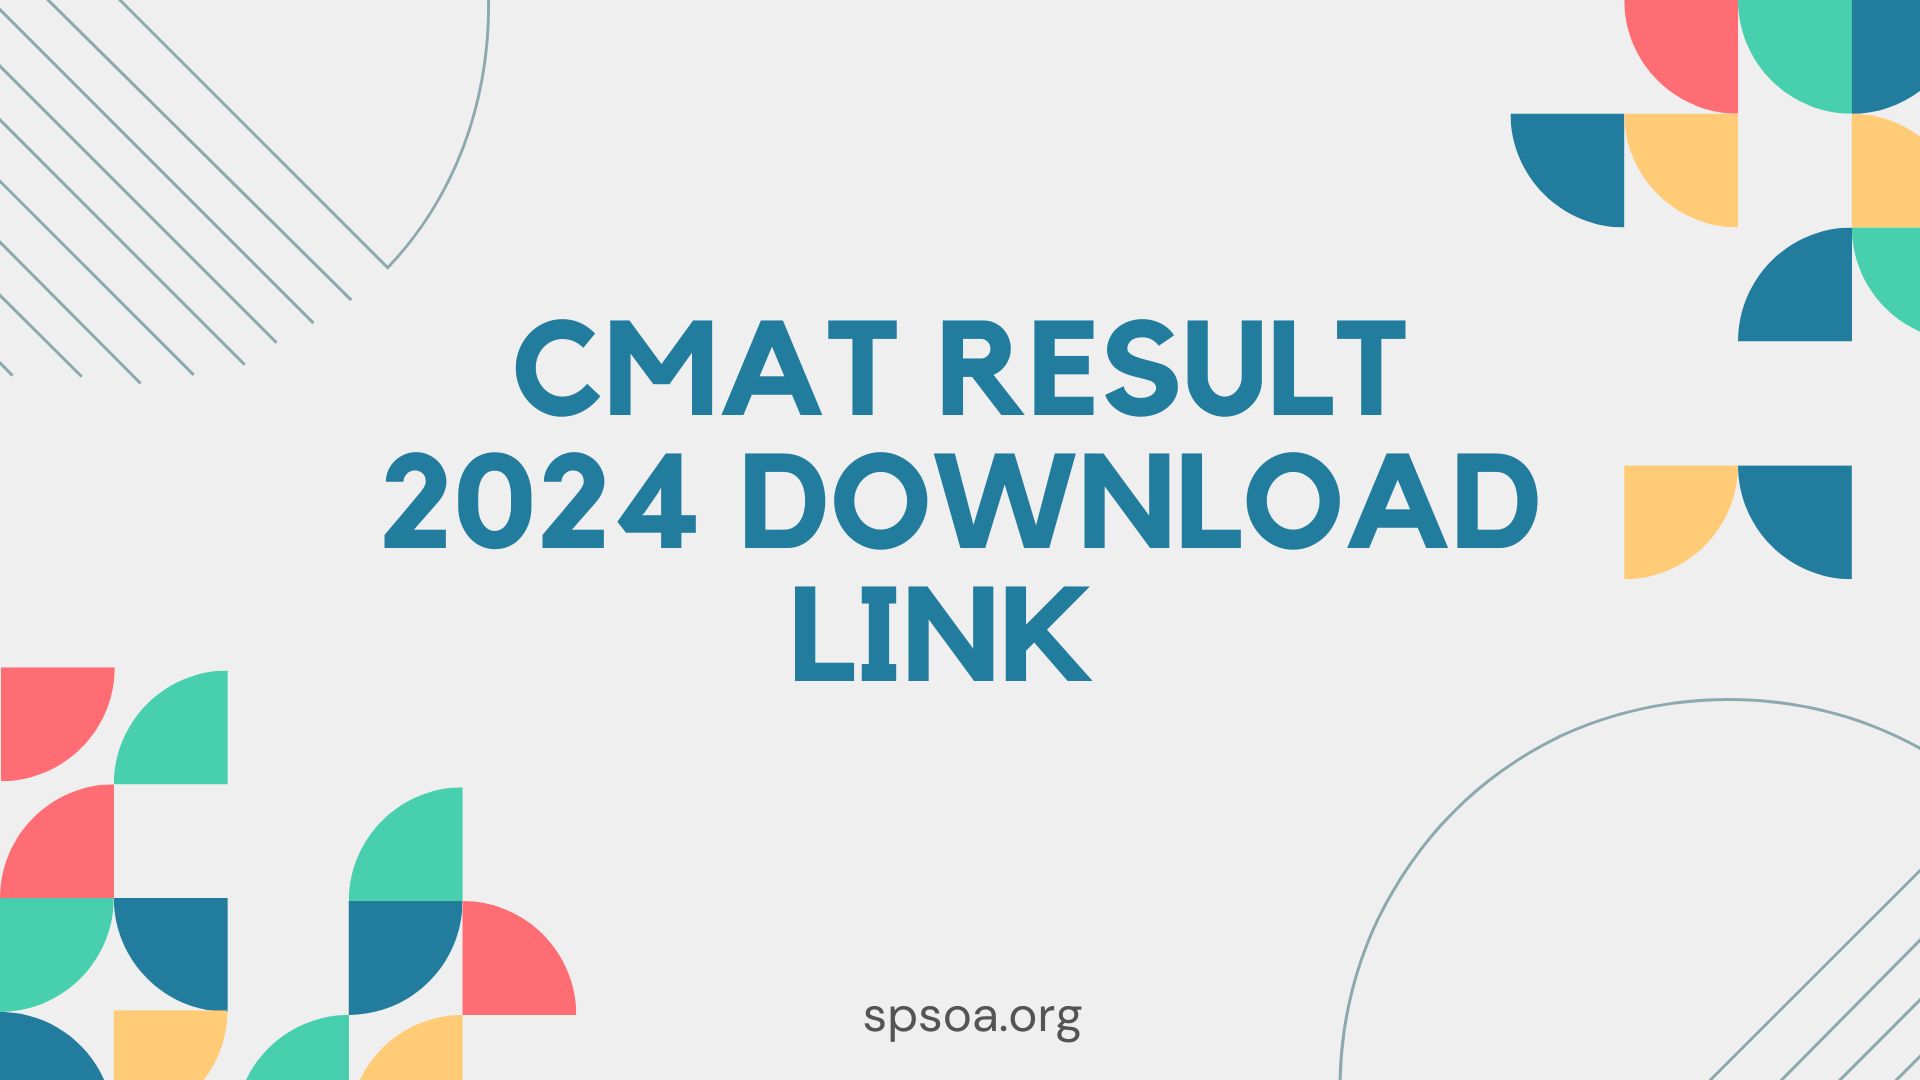 CMAT Result 2024 Download Link